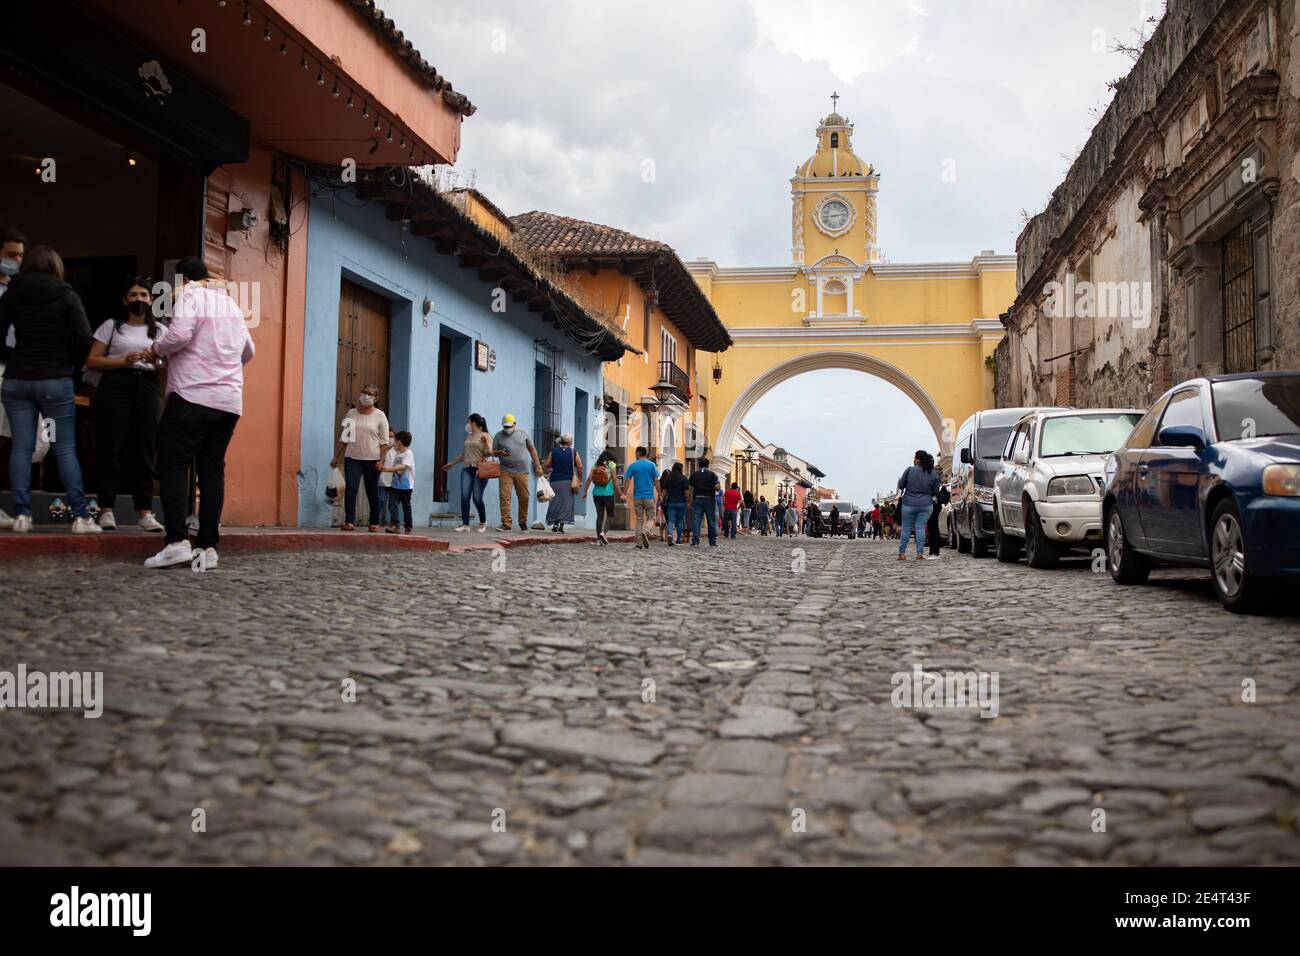 Santa Catalina Arch in Antigua, Guatemala, Central America Stock Photo